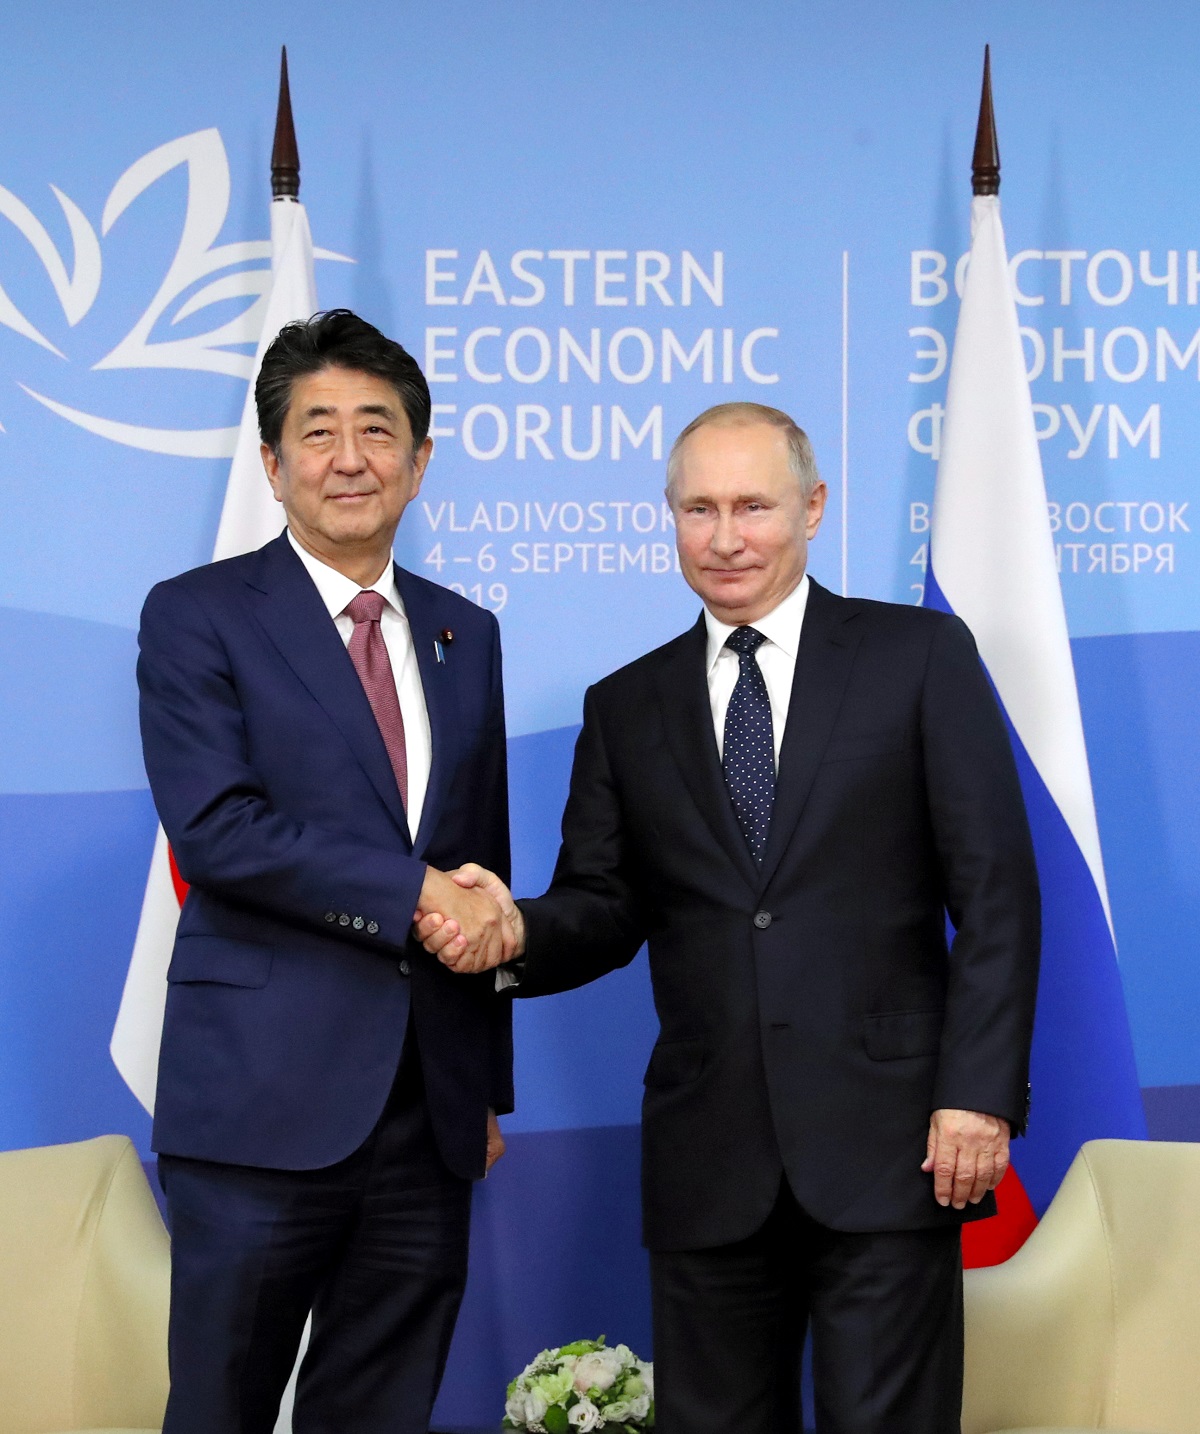 写真・図版 : 「東方経済フォーラム」で首脳会談を行った安倍首相とプーチン大統領＝2019年9月5日、ロシア・ウラジオストク